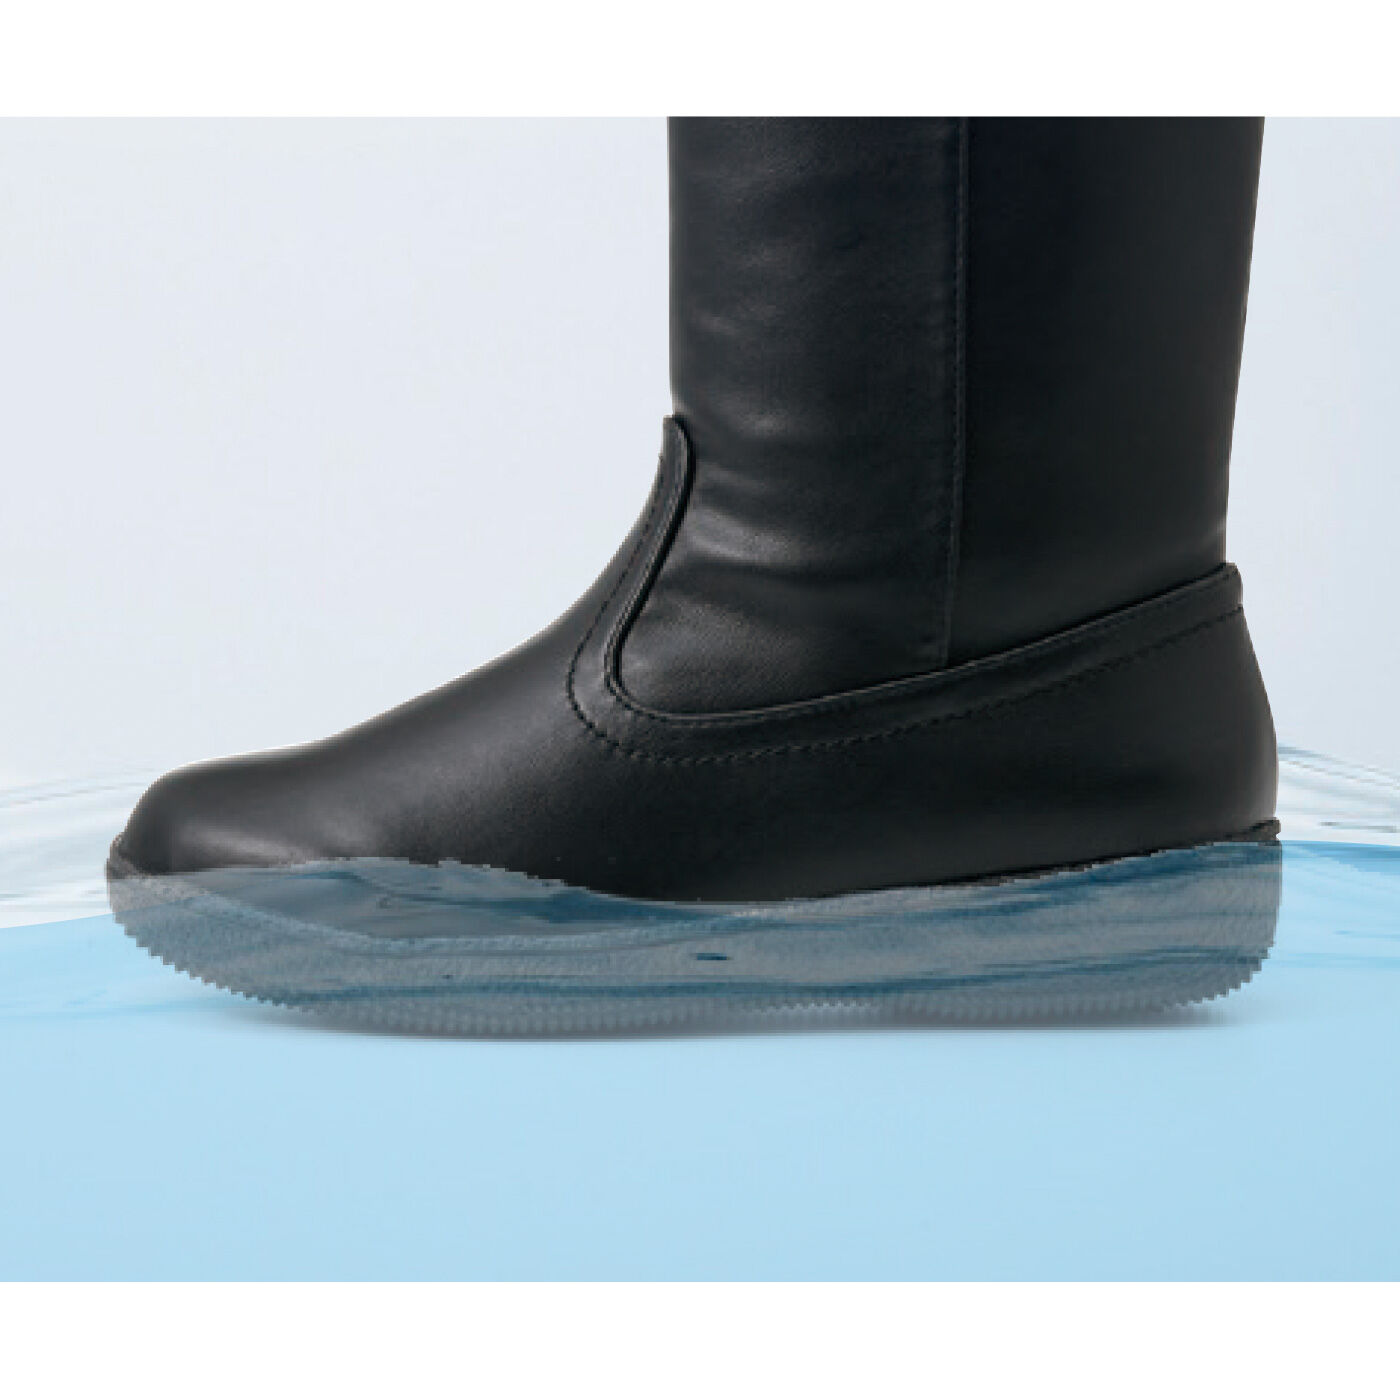 L'AMIPLUS|ラミプリュス　北海道の靴屋さん発 スパイクが出てくる 防水仕様ブーツ〈ブラック〉|生活防水仕様。3cm水深で約3時間雨の浸入をガード。